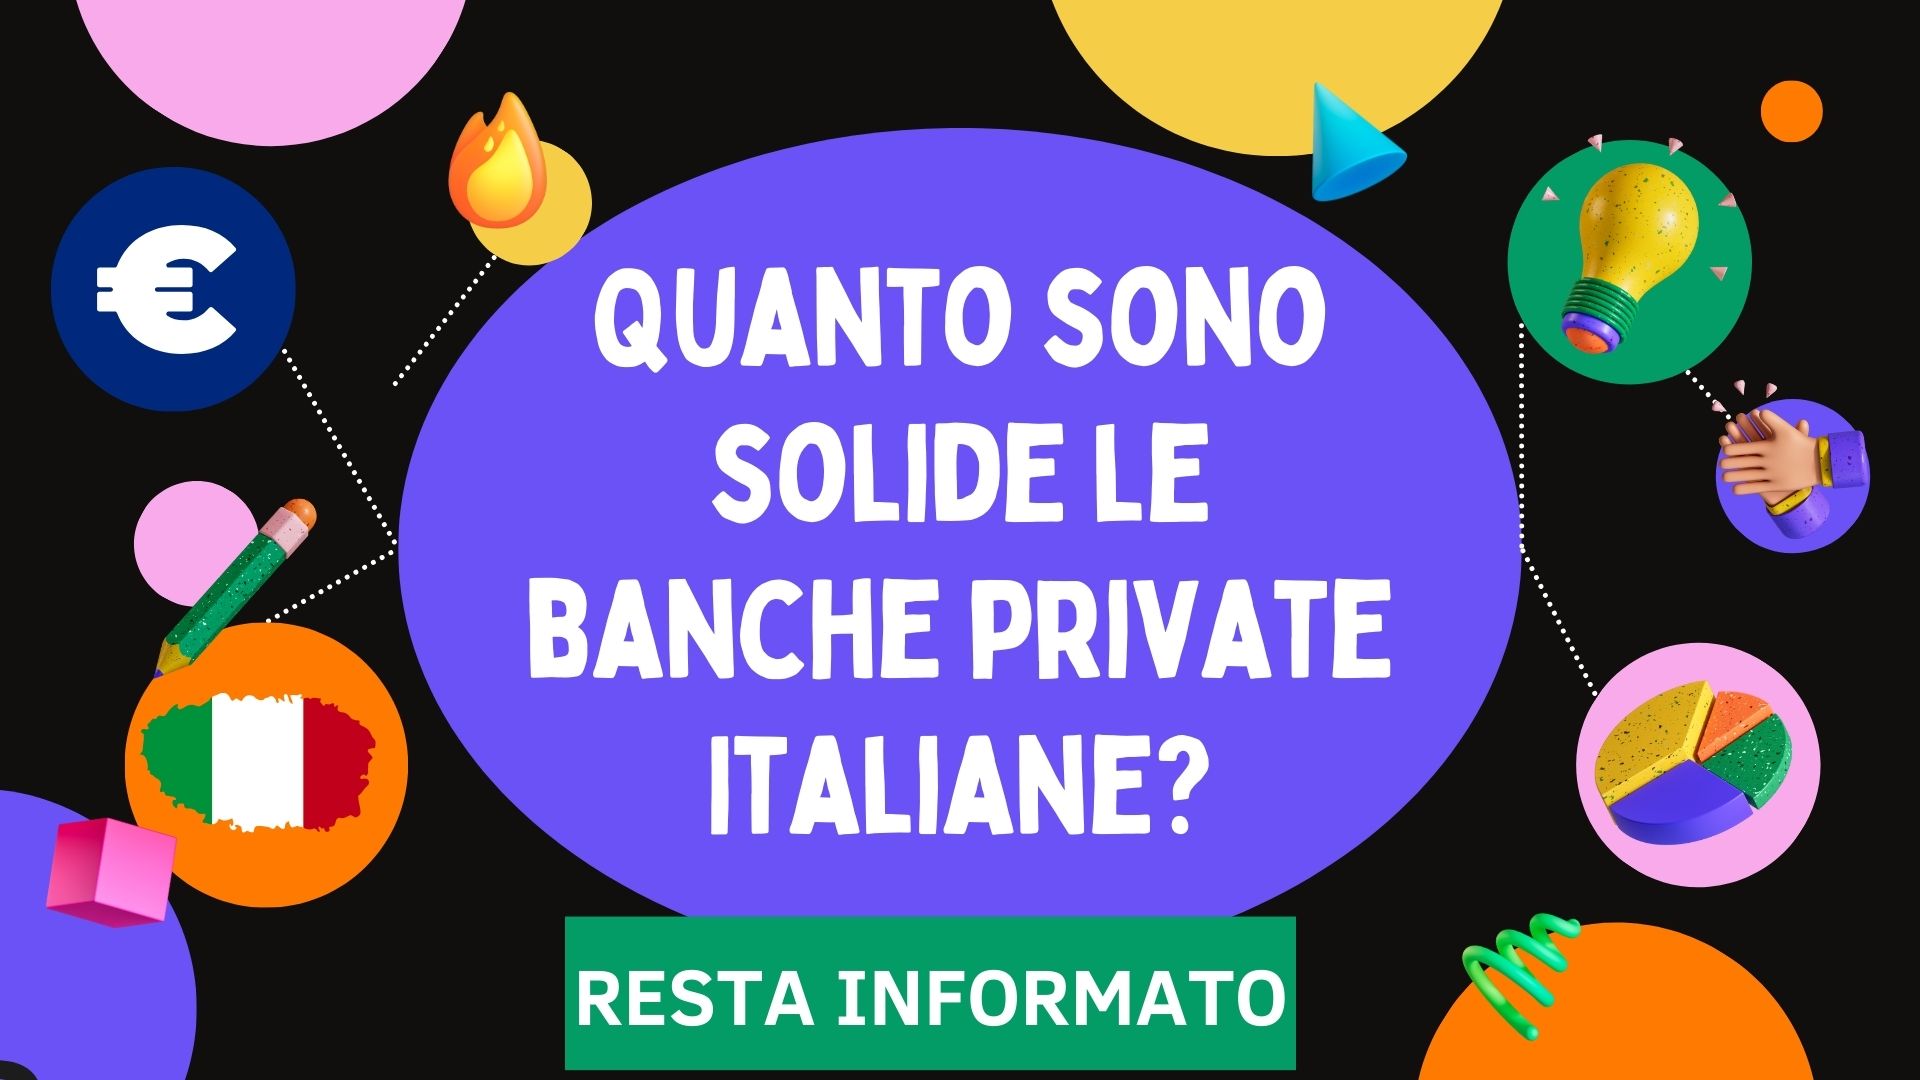 Quanto sono solide le banche private Italiane?